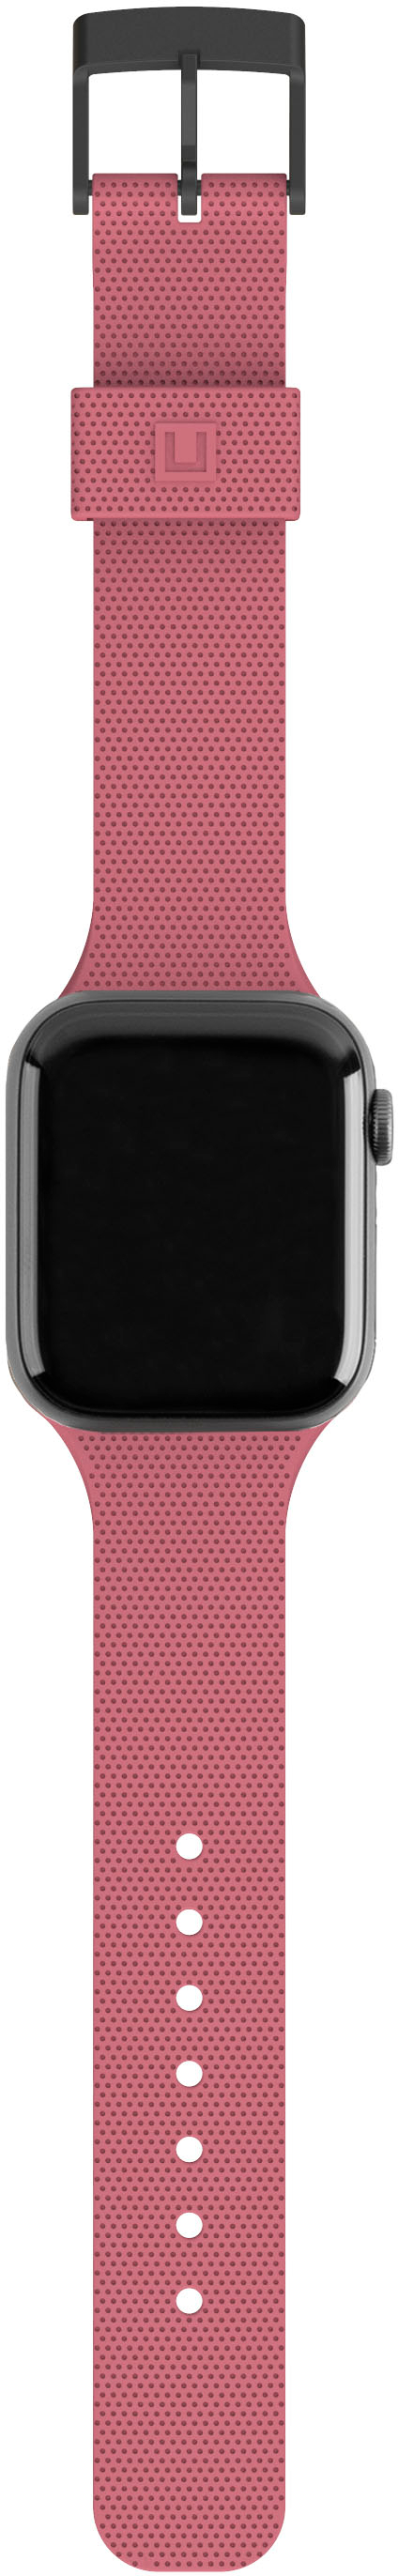 Handdn Light Pink Calfskin Apple Watch Band – Waves Texture